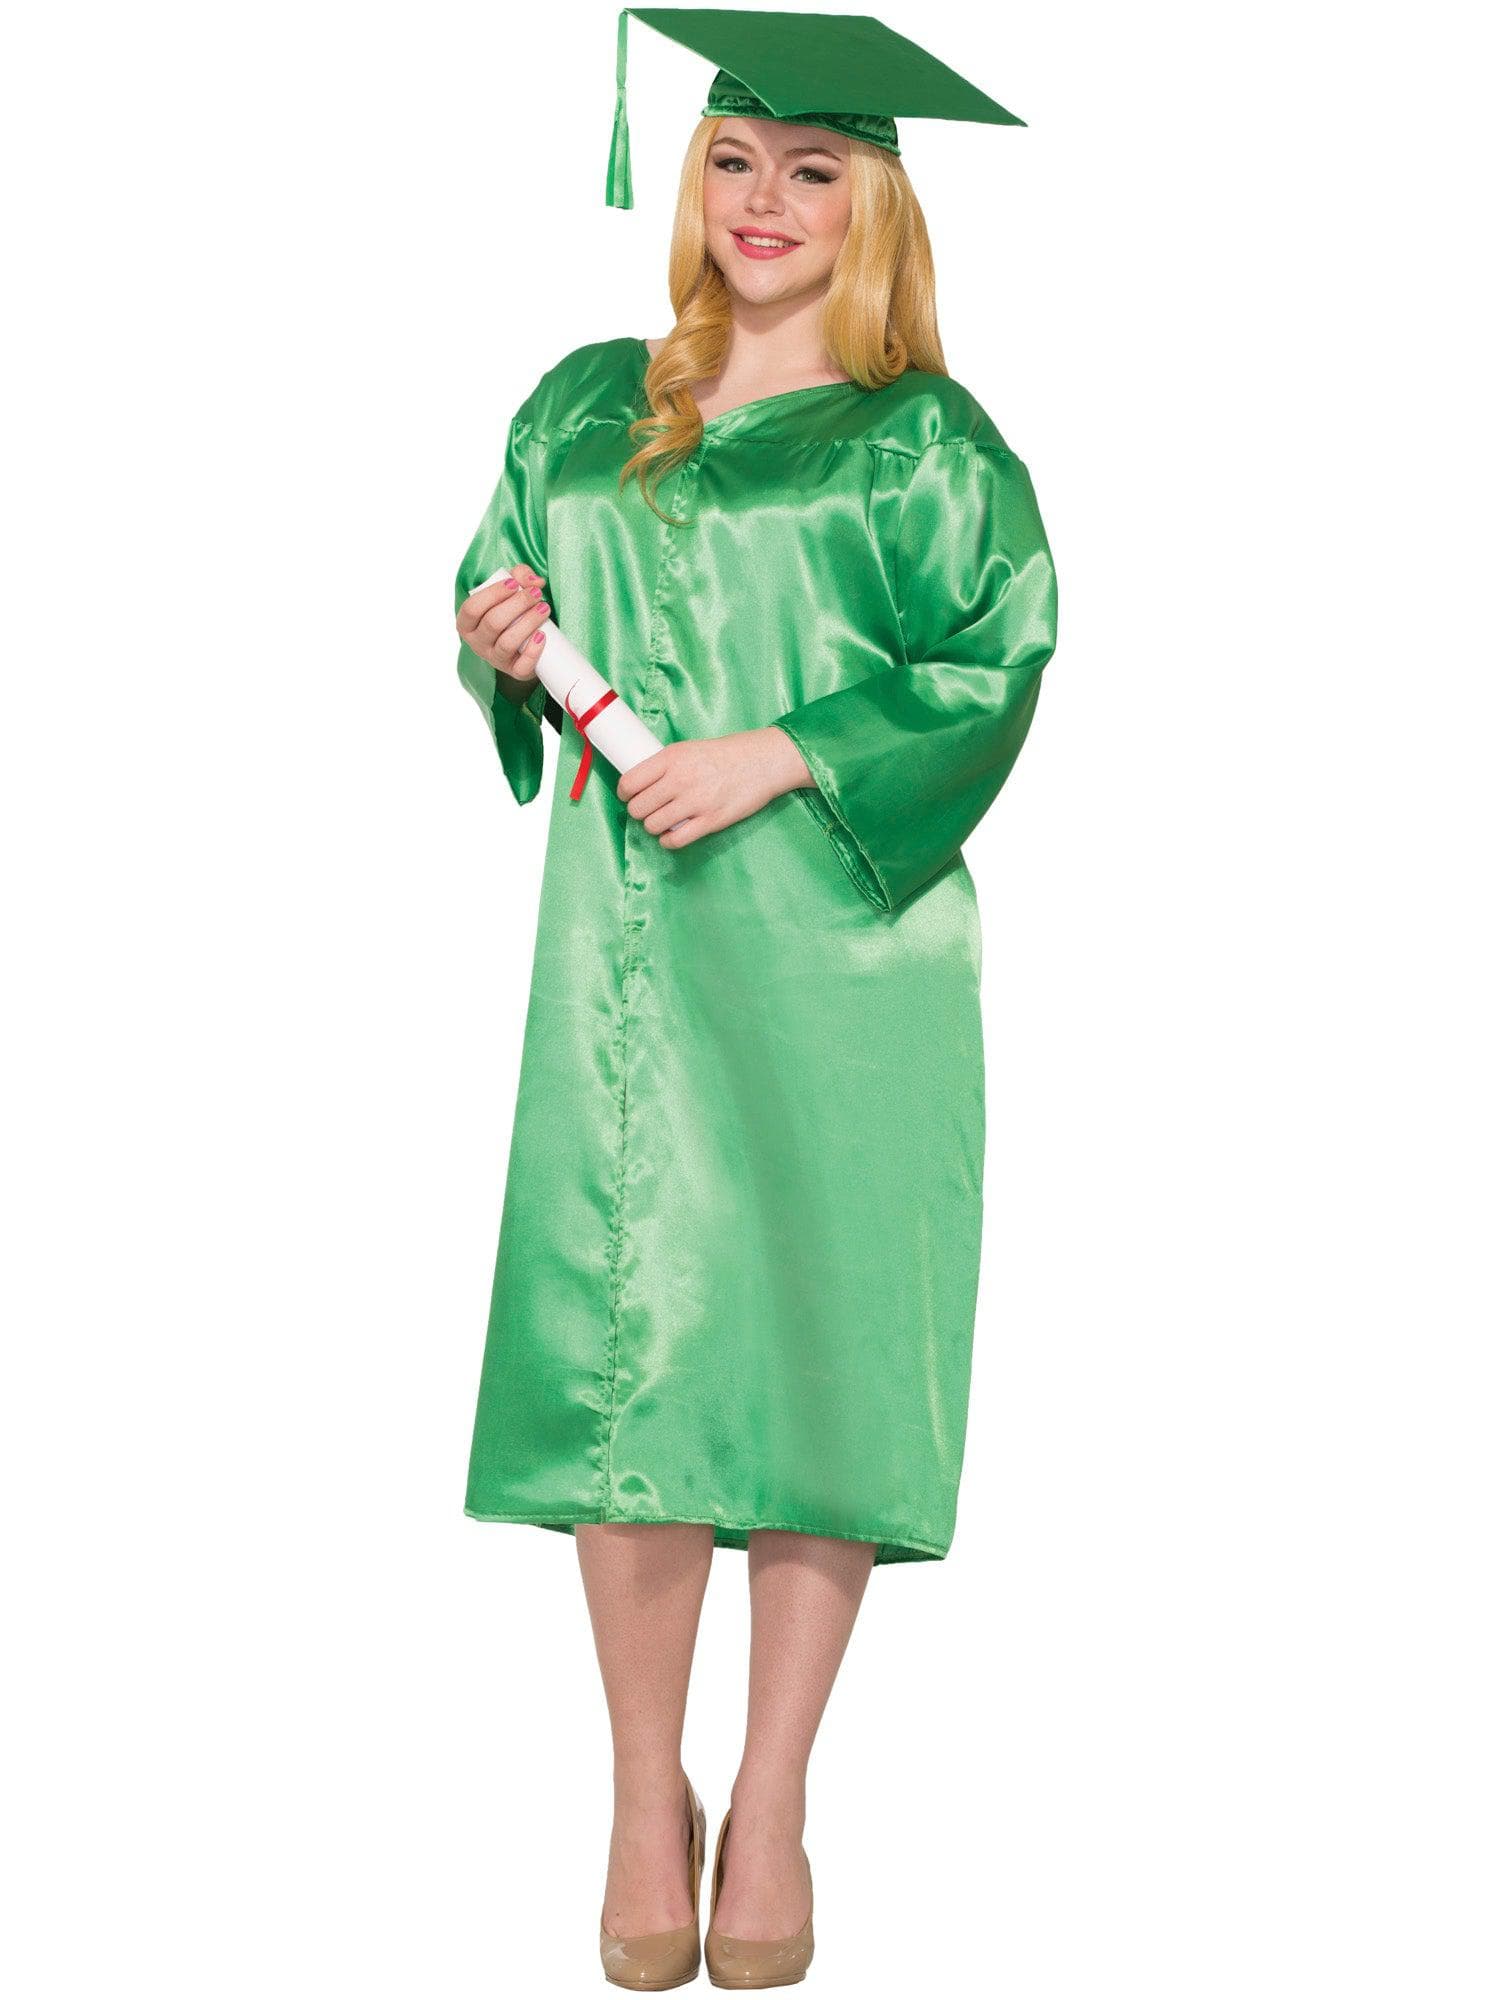 Green Graduation Adult Robe - costumes.com